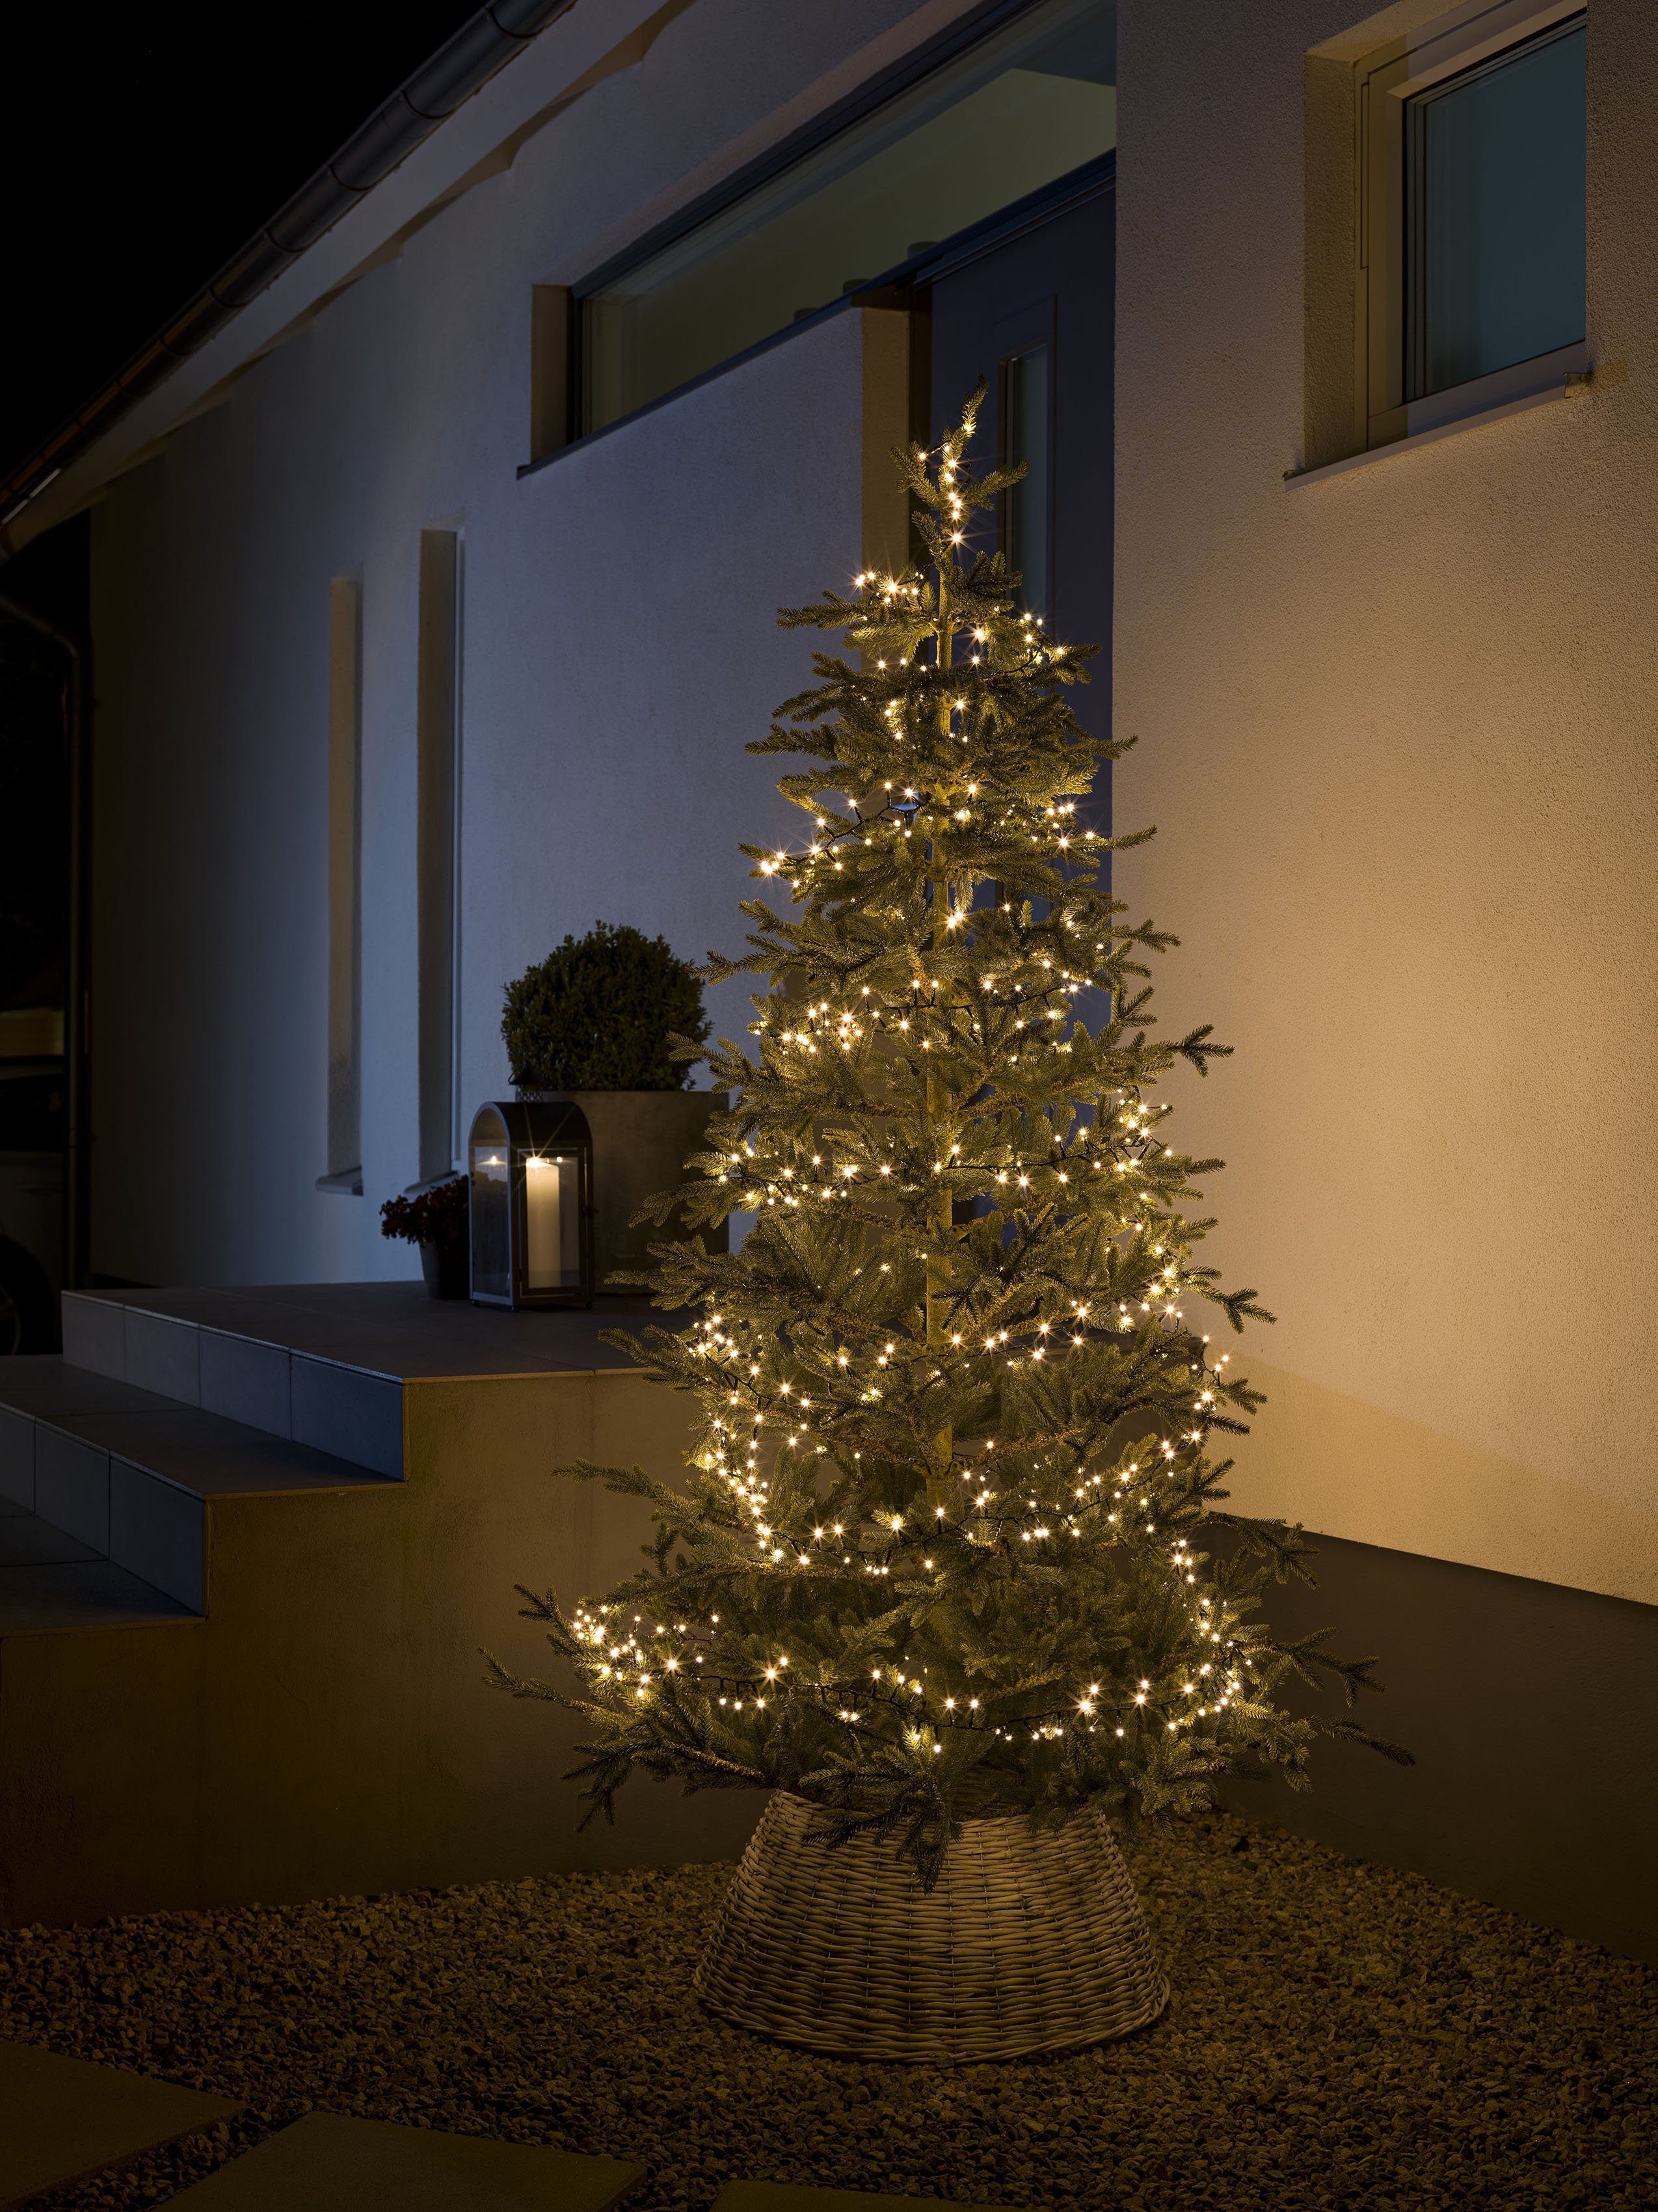 KONSTSMIDE LED-Lichterkette Weihnachtsdeko aussen, LED 600 LED-Technik Energiesparend Compactlights, Dioden, 600-flammig, Micro durch warmweiße